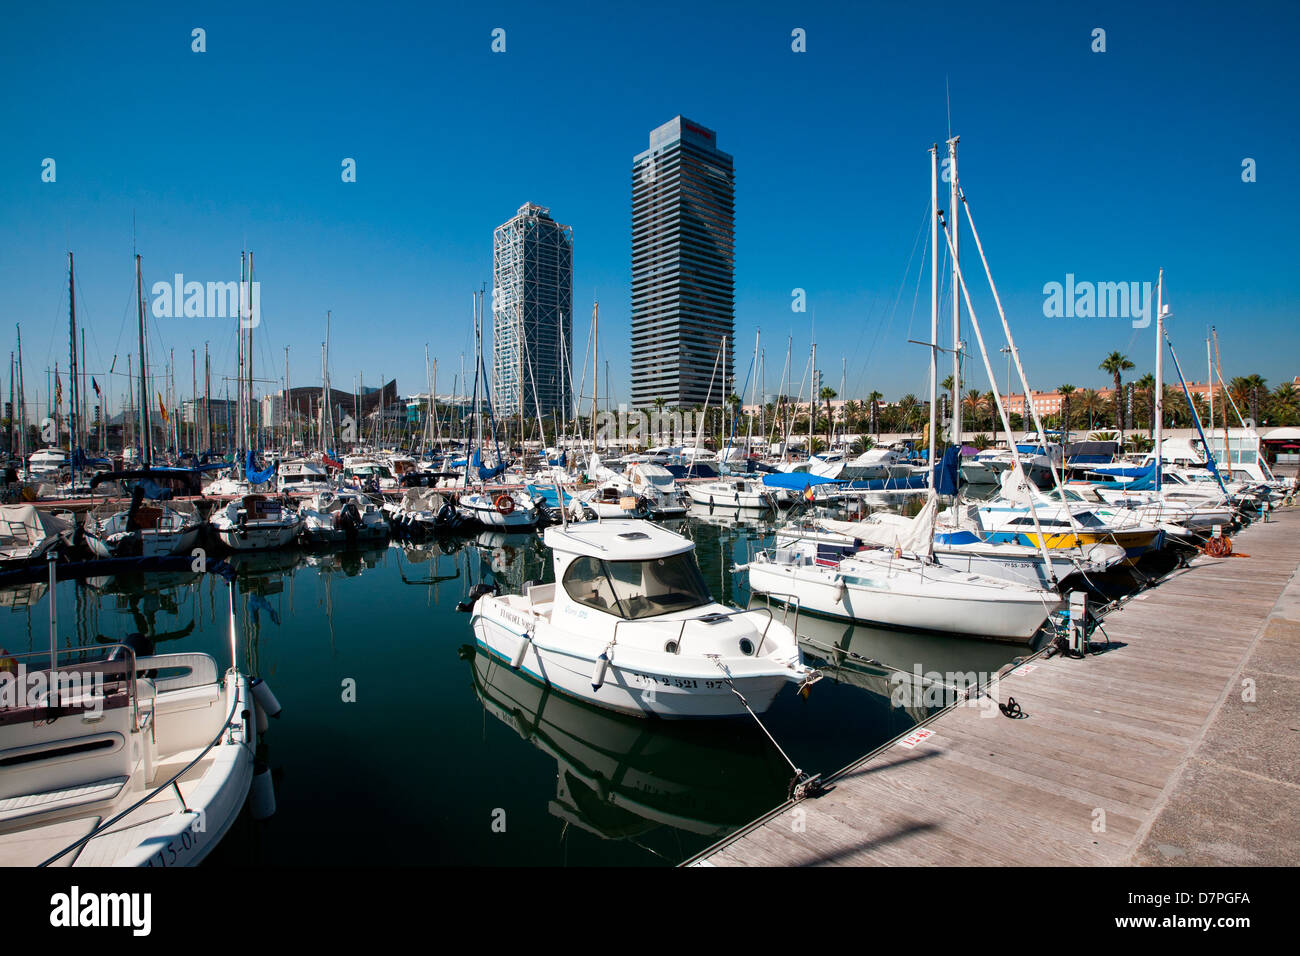 Port Olimpic Marina, (Port Olympic Marina), Barcelona, Spain Stock Photo -  Alamy